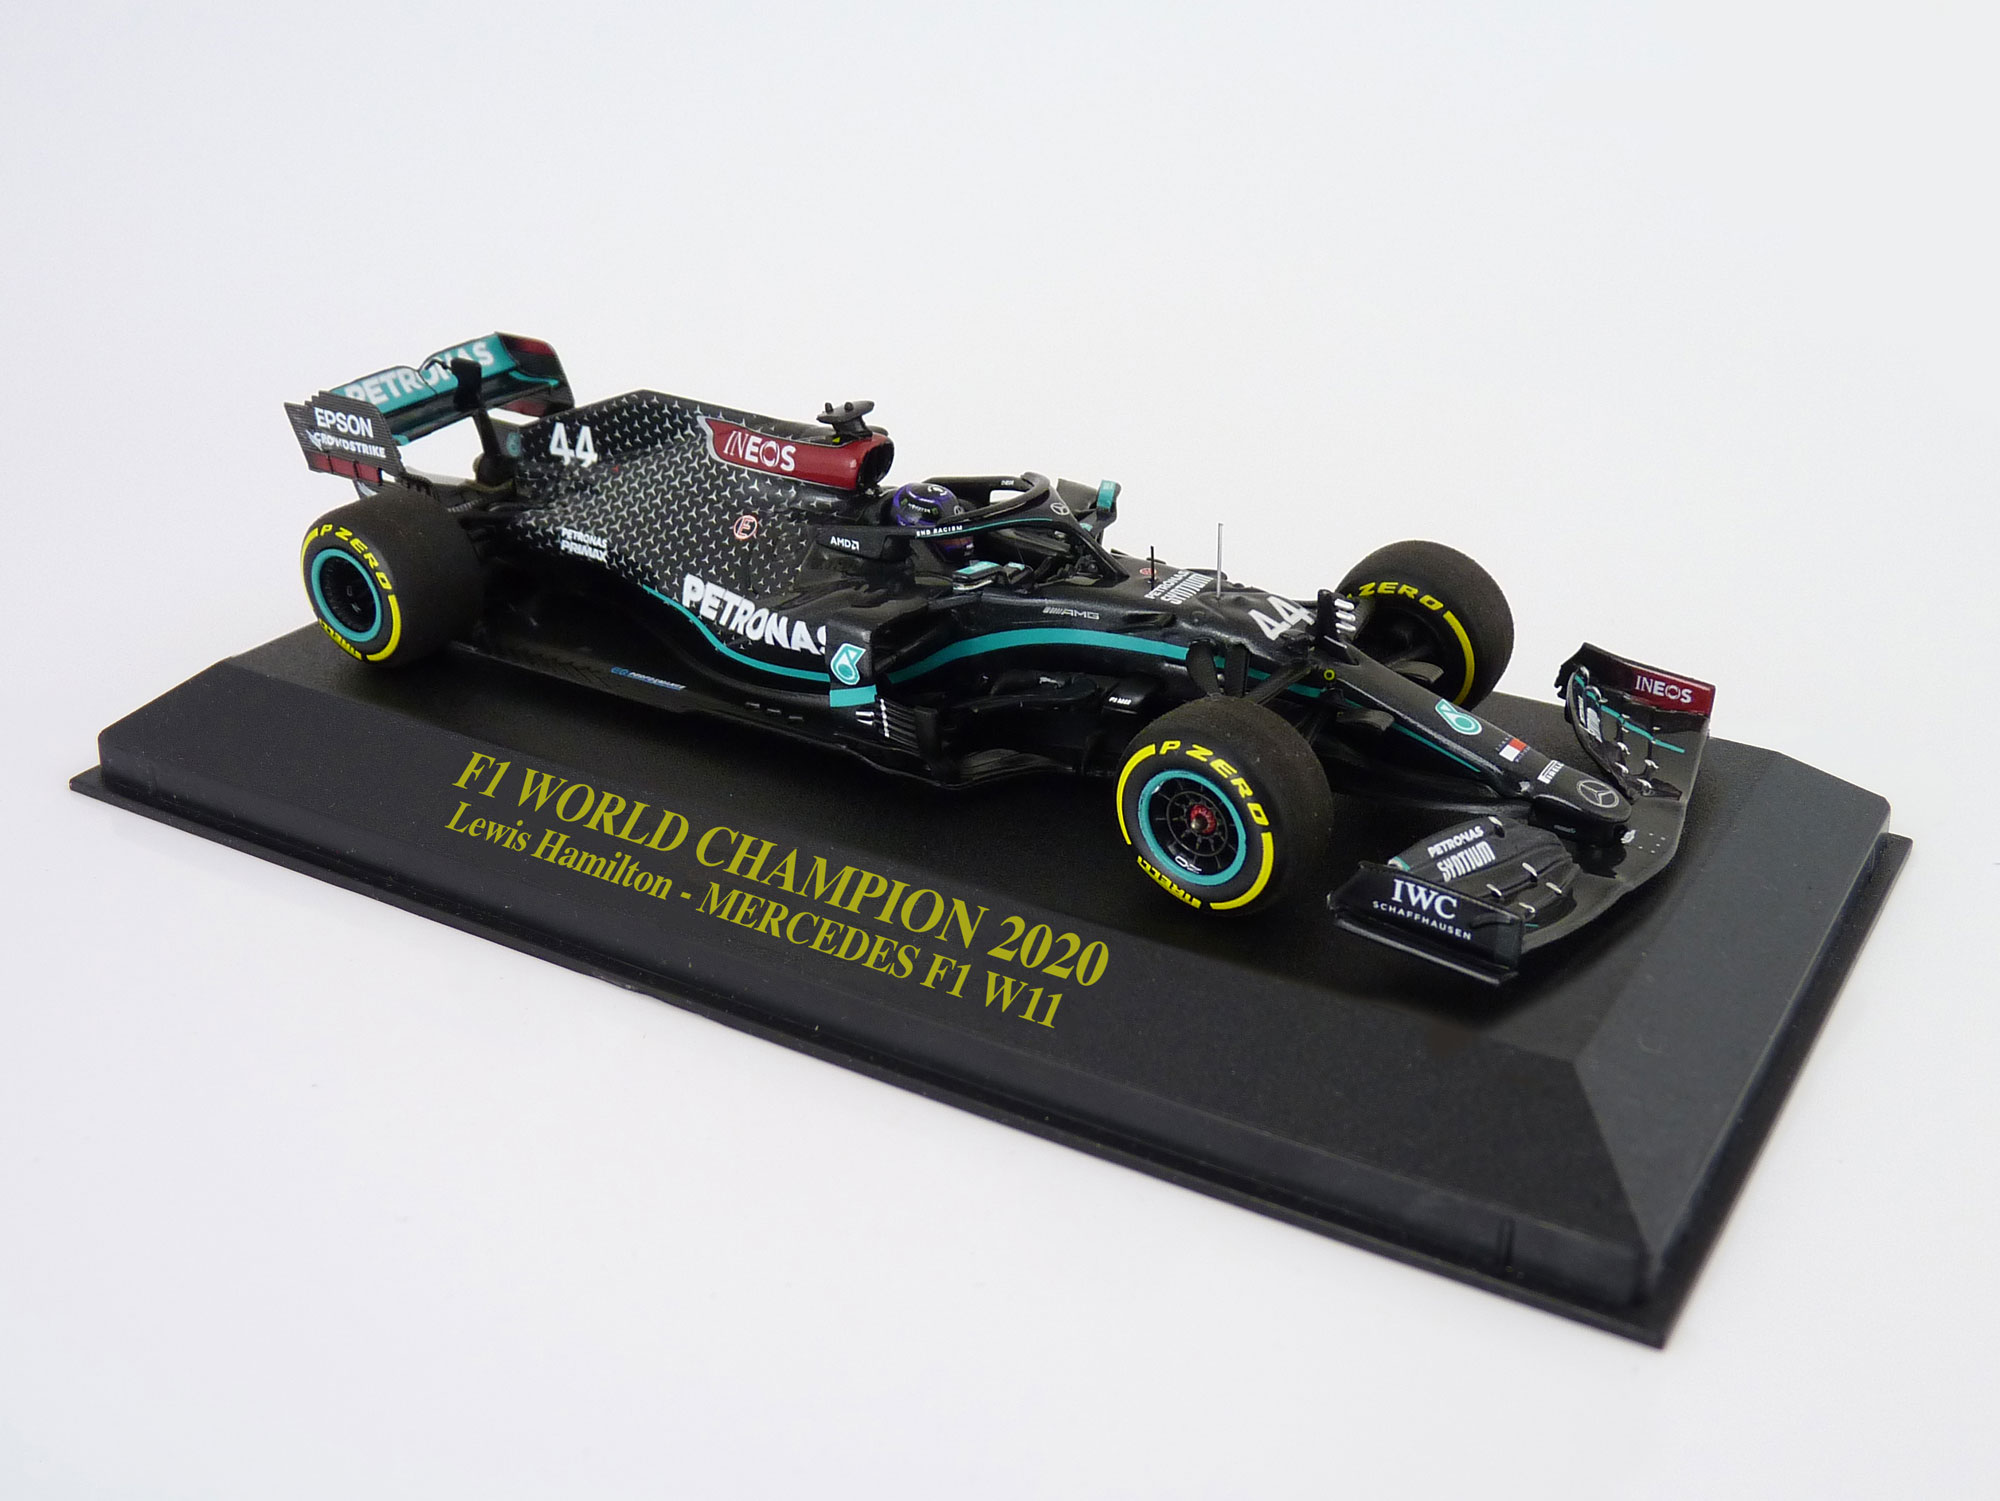 2020 - Lewis Hamilton